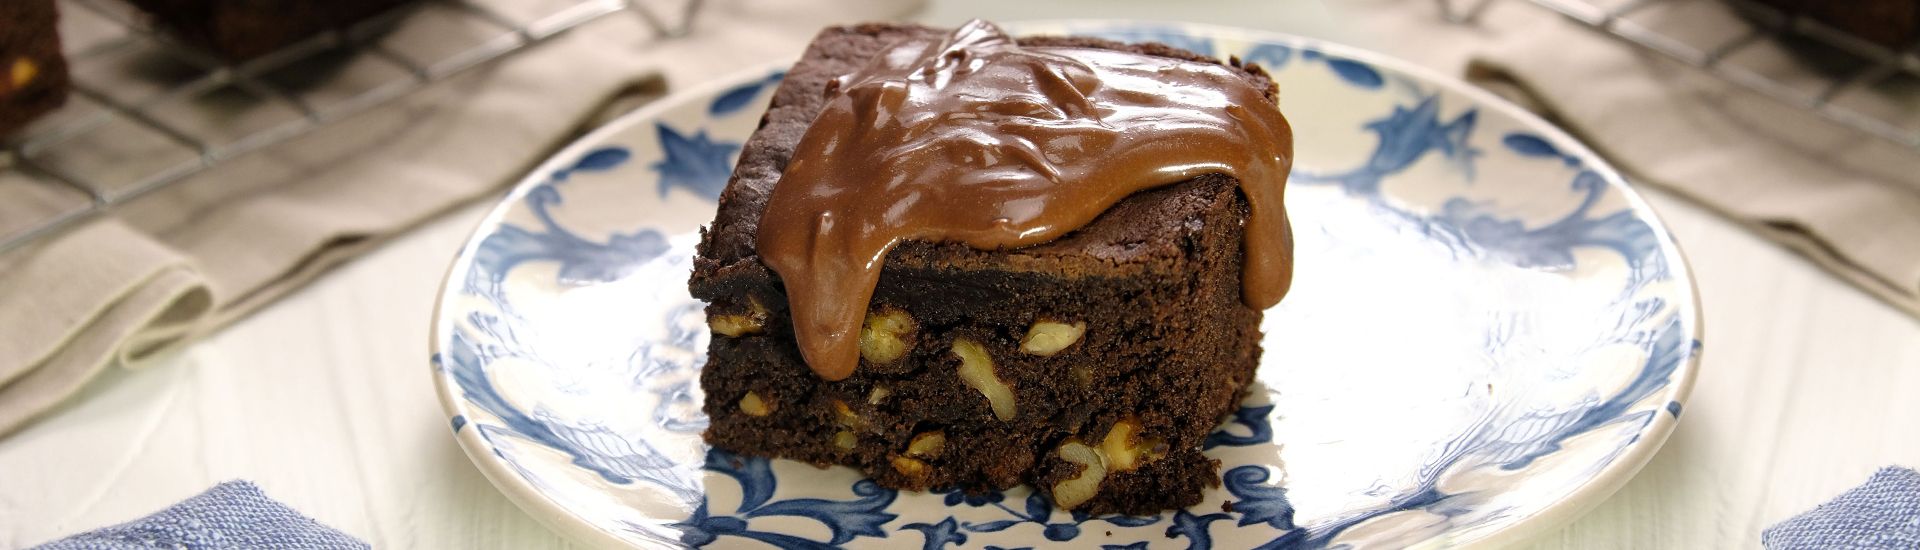 Brownie com mistura para bolo de chocolate